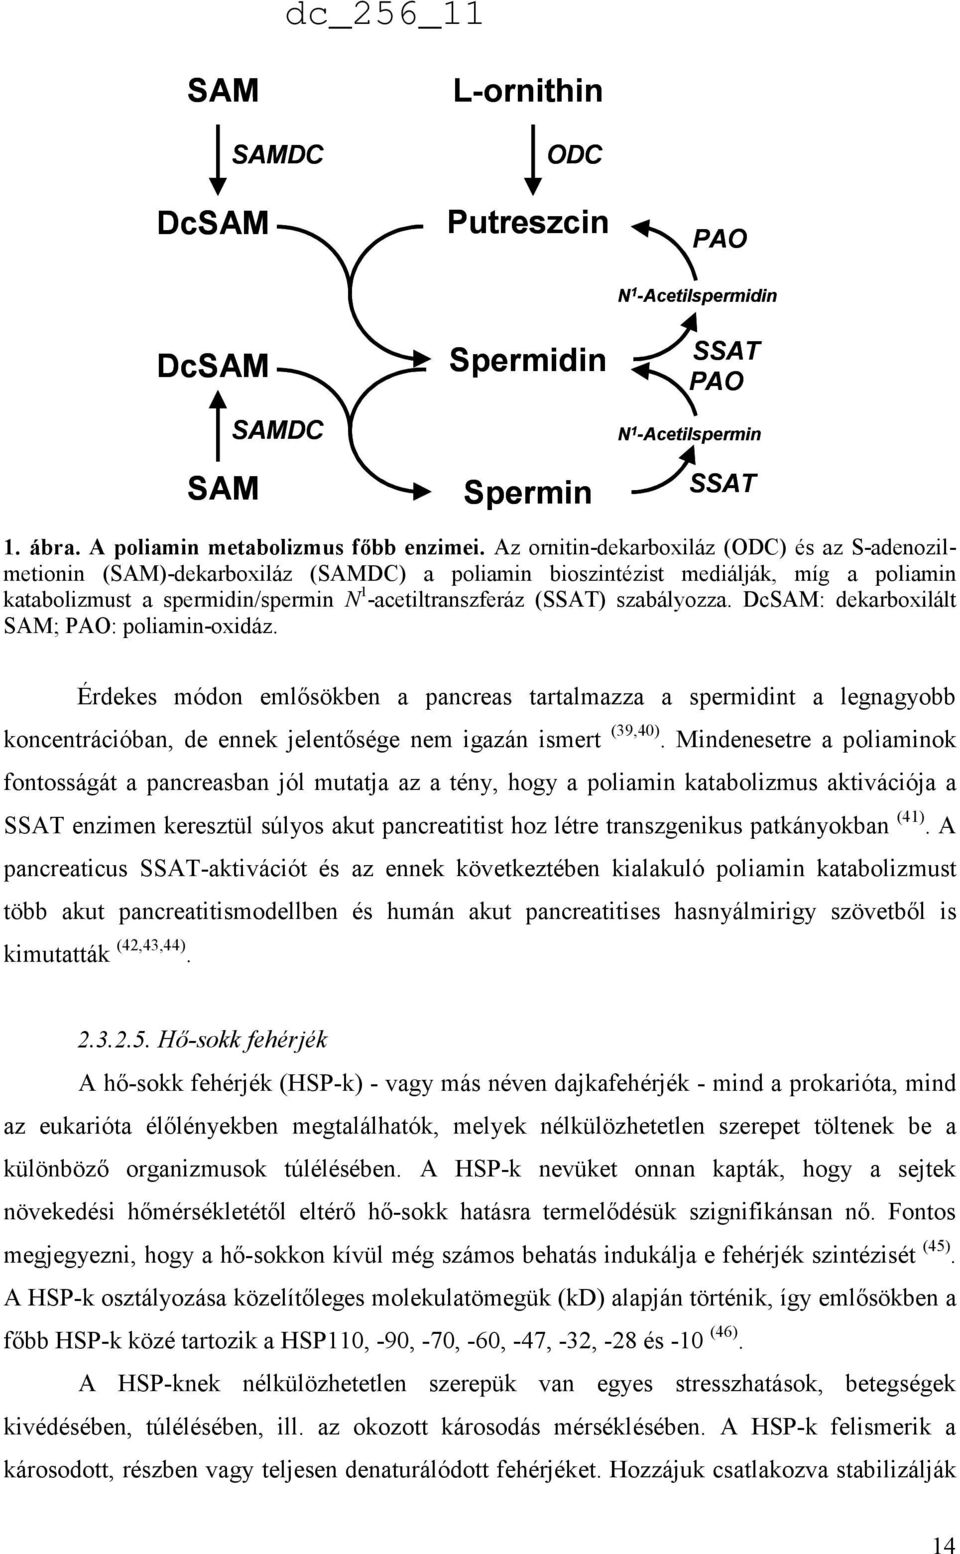 szabályozza. DcSAM: dekarboxilált SAM; PAO: poliamin-oxidáz. Érdekes módon emlősökben a pancreas tartalmazza a spermidint a legnagyobb koncentrációban, de ennek jelentősége nem igazán ismert (39,40).